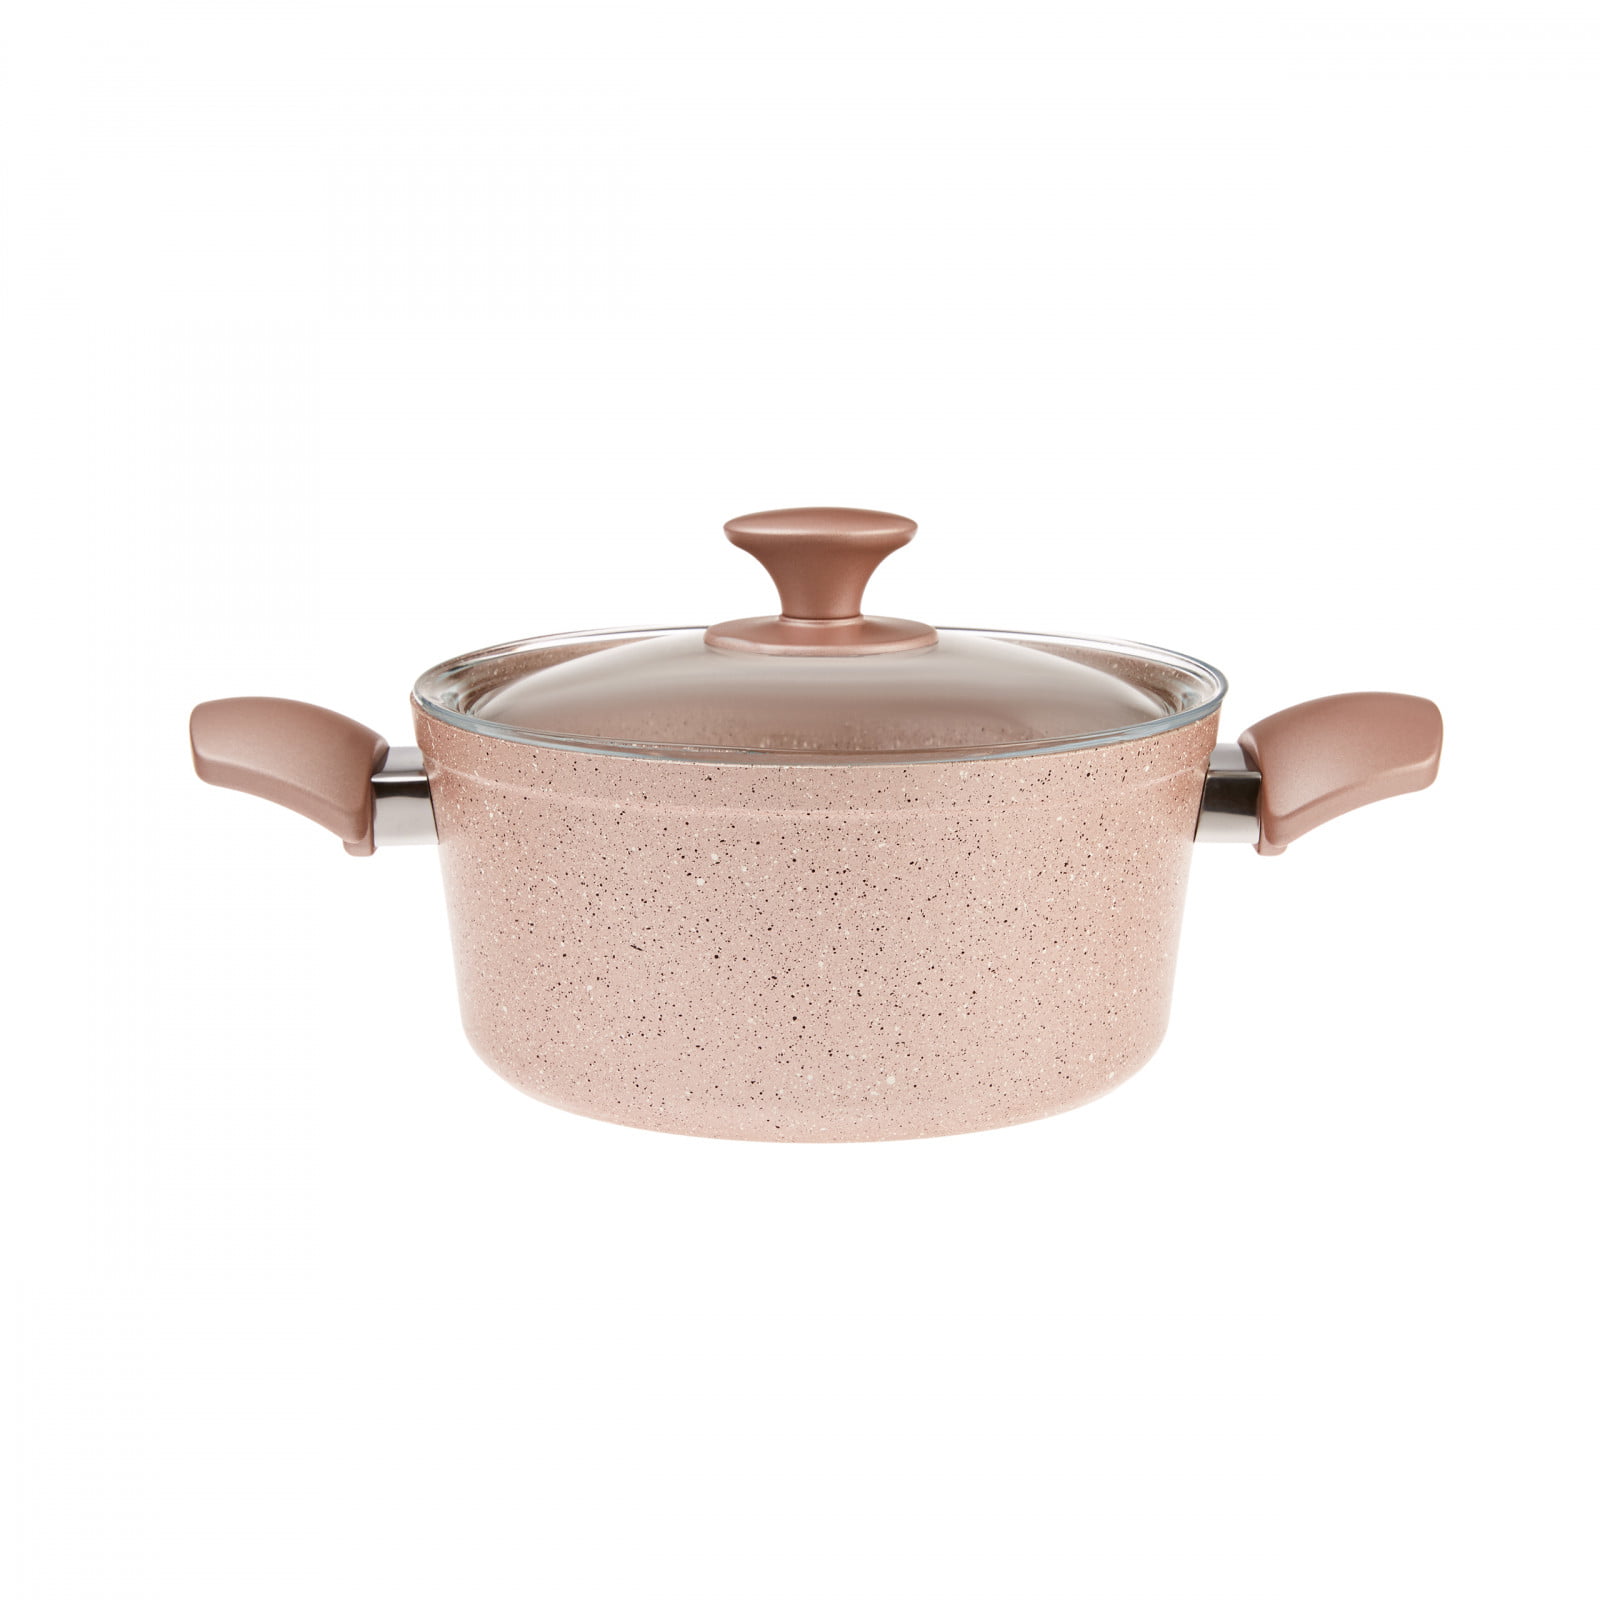 SET OF 9 Karaca Non-Stick Cookware Set(Fry Pans,Stockpots,Utensils Set)Rose  Gold